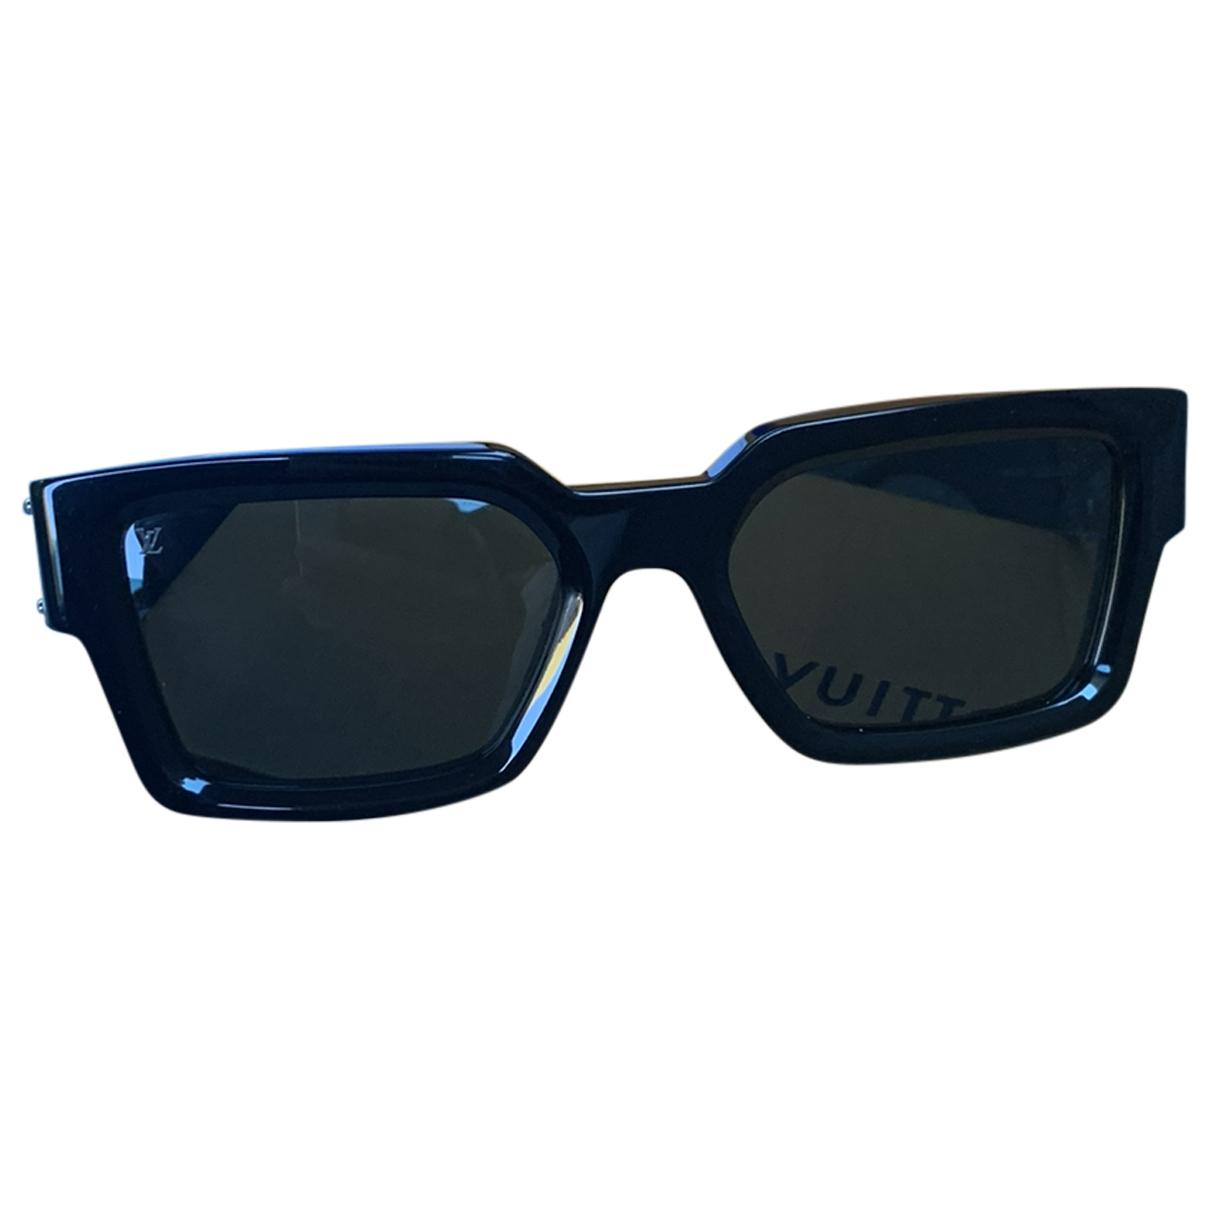 Sunglasses Louis Vuitton Black in Plastic - 35377474